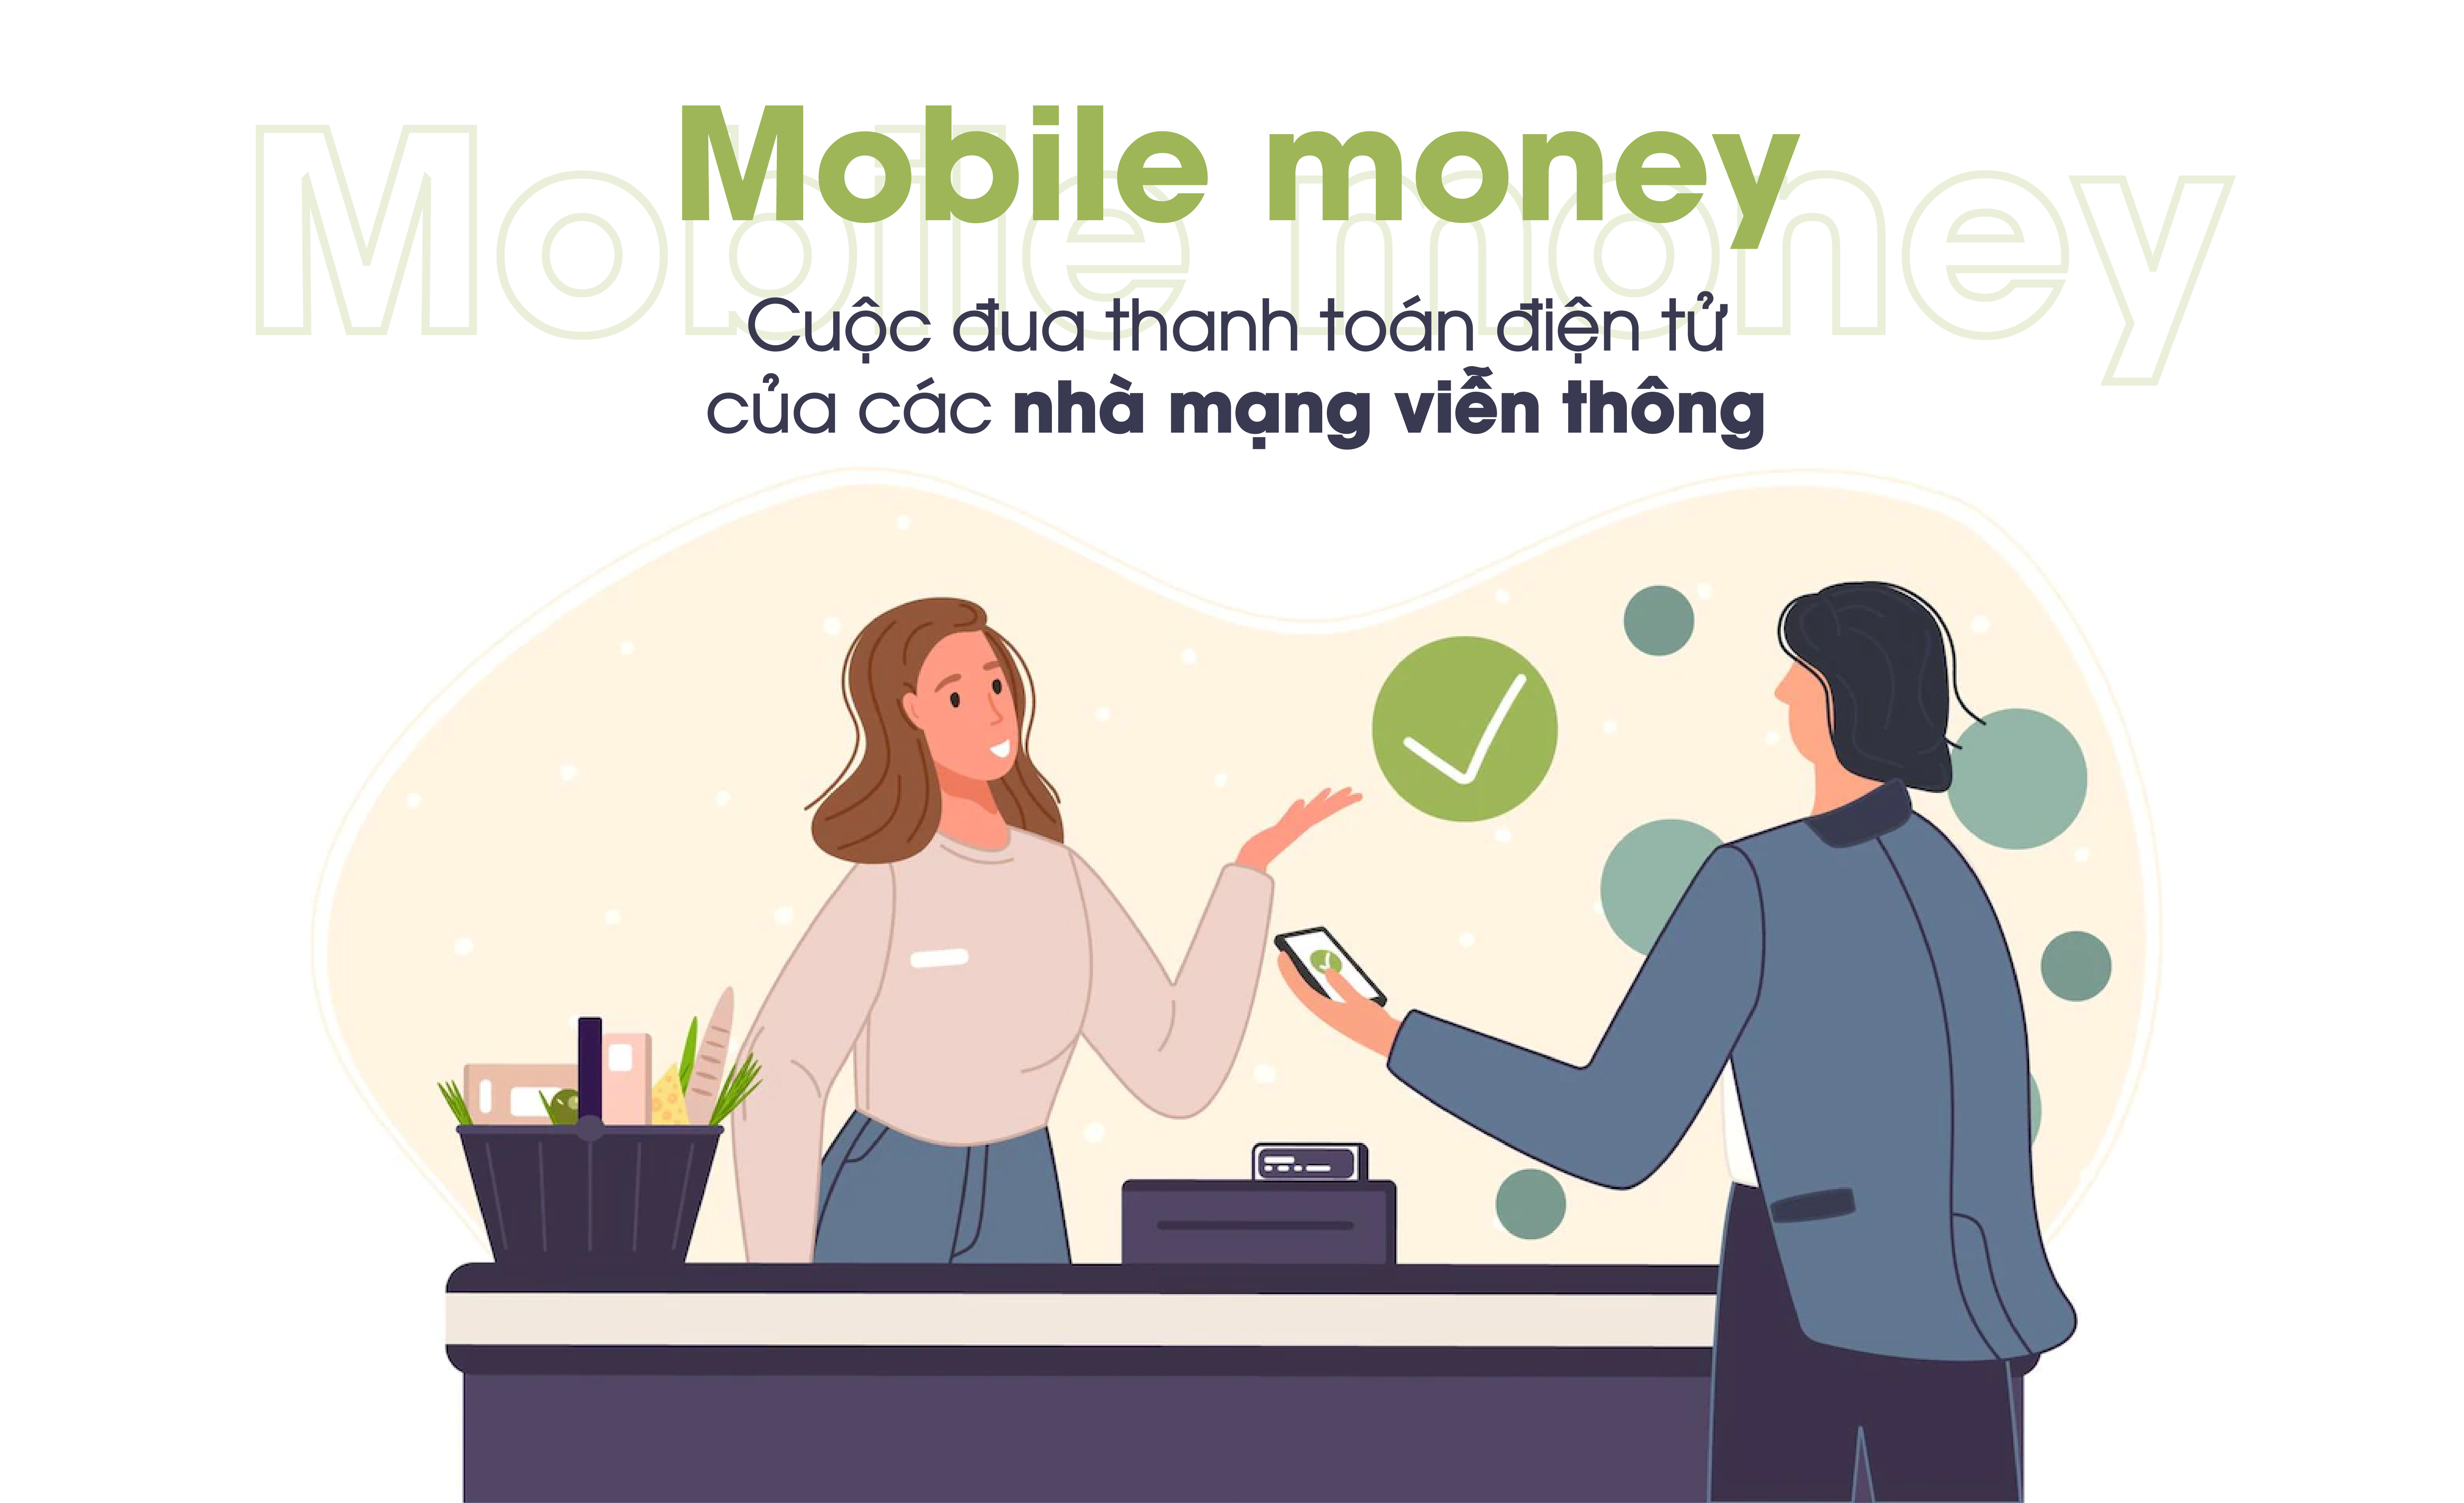 Mobile money: Cuộc đua thanh toán điện tử mới của các nhà mạng viễn thông